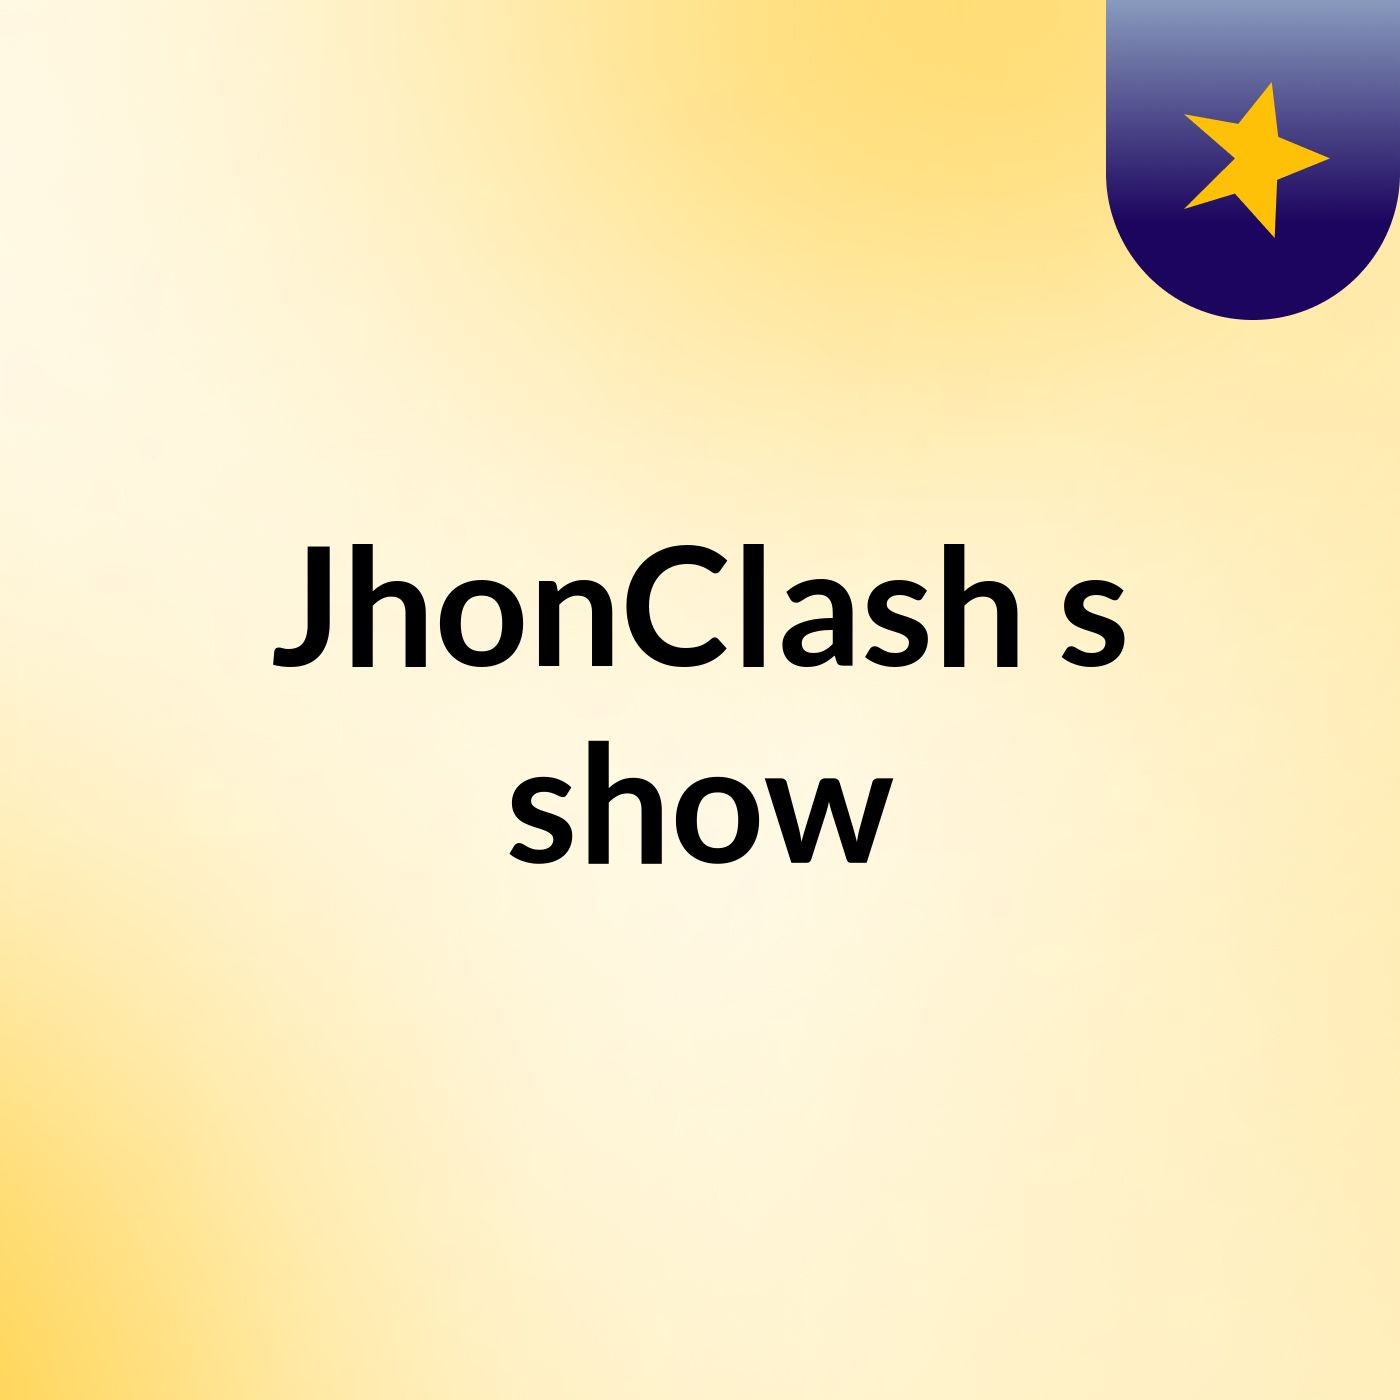 JhonClash's show